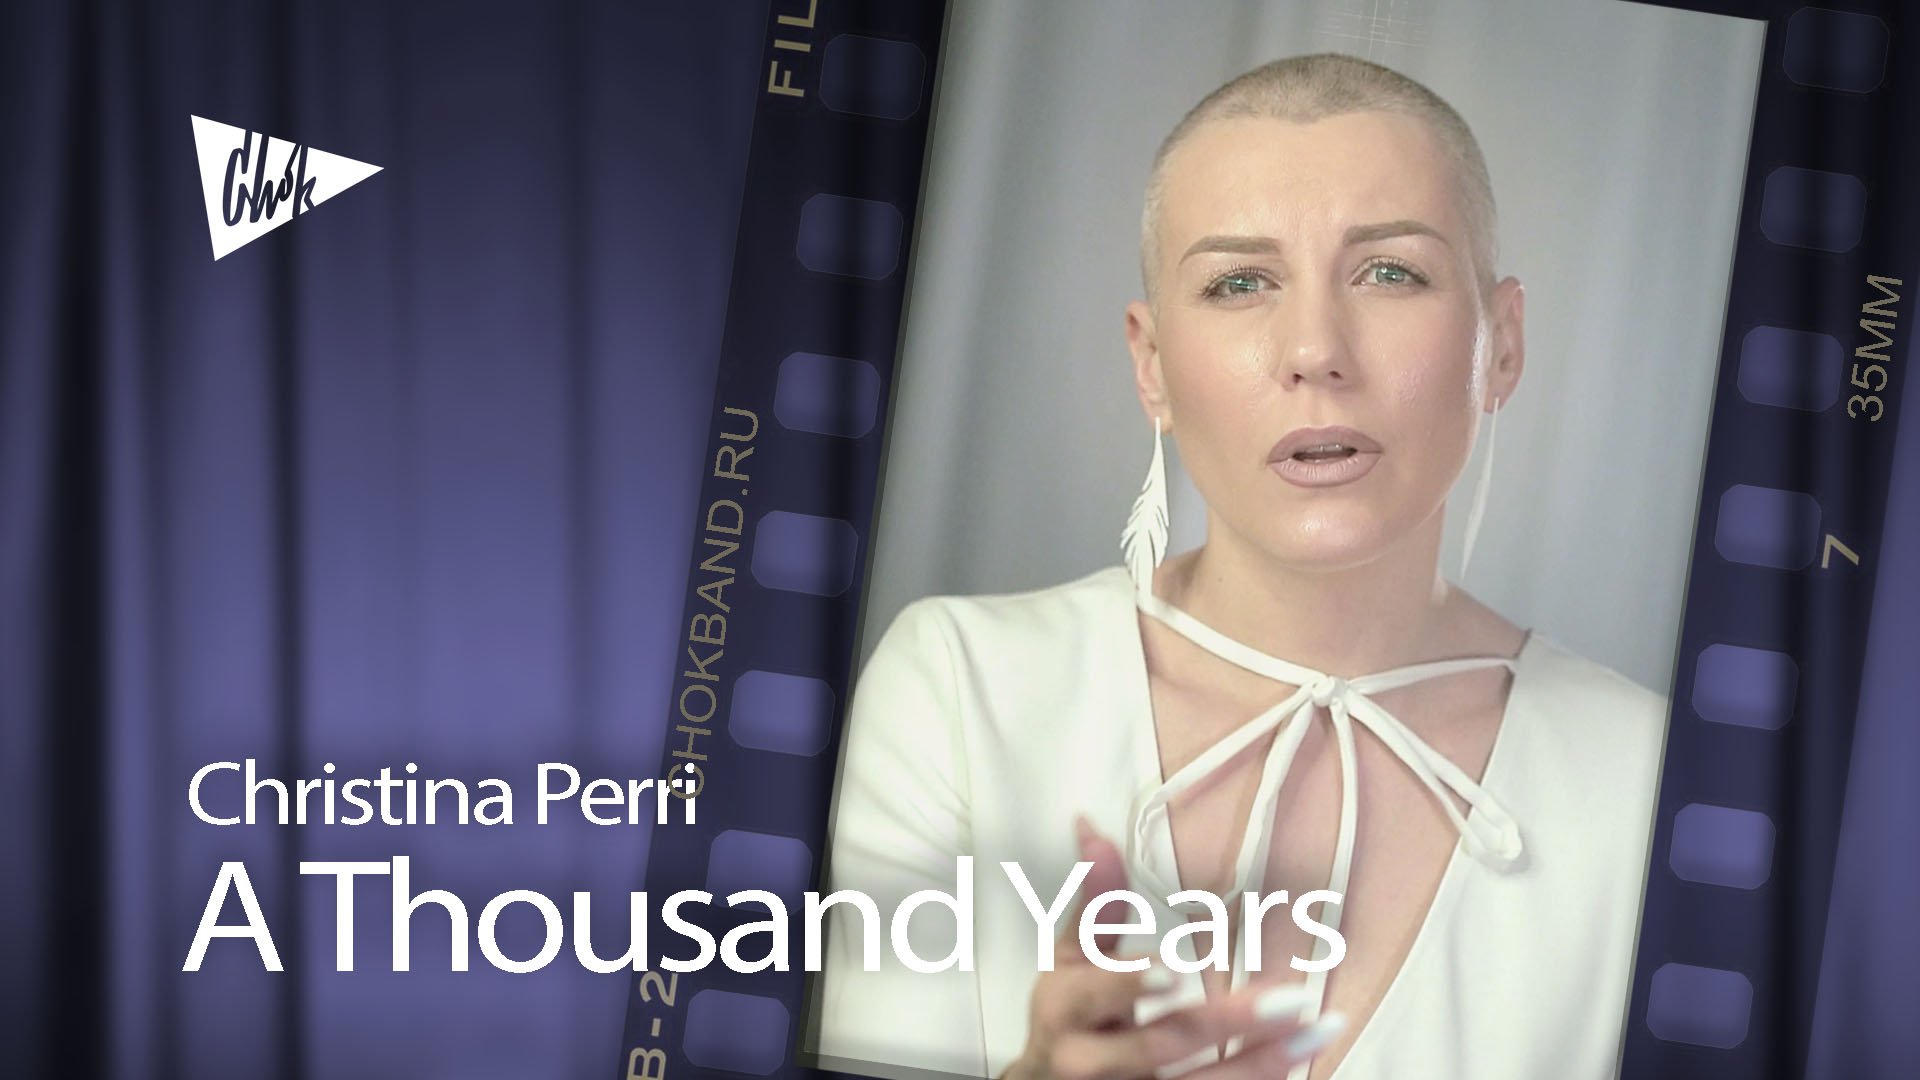 Christina Perri - A Thousand Years (Chok cover)